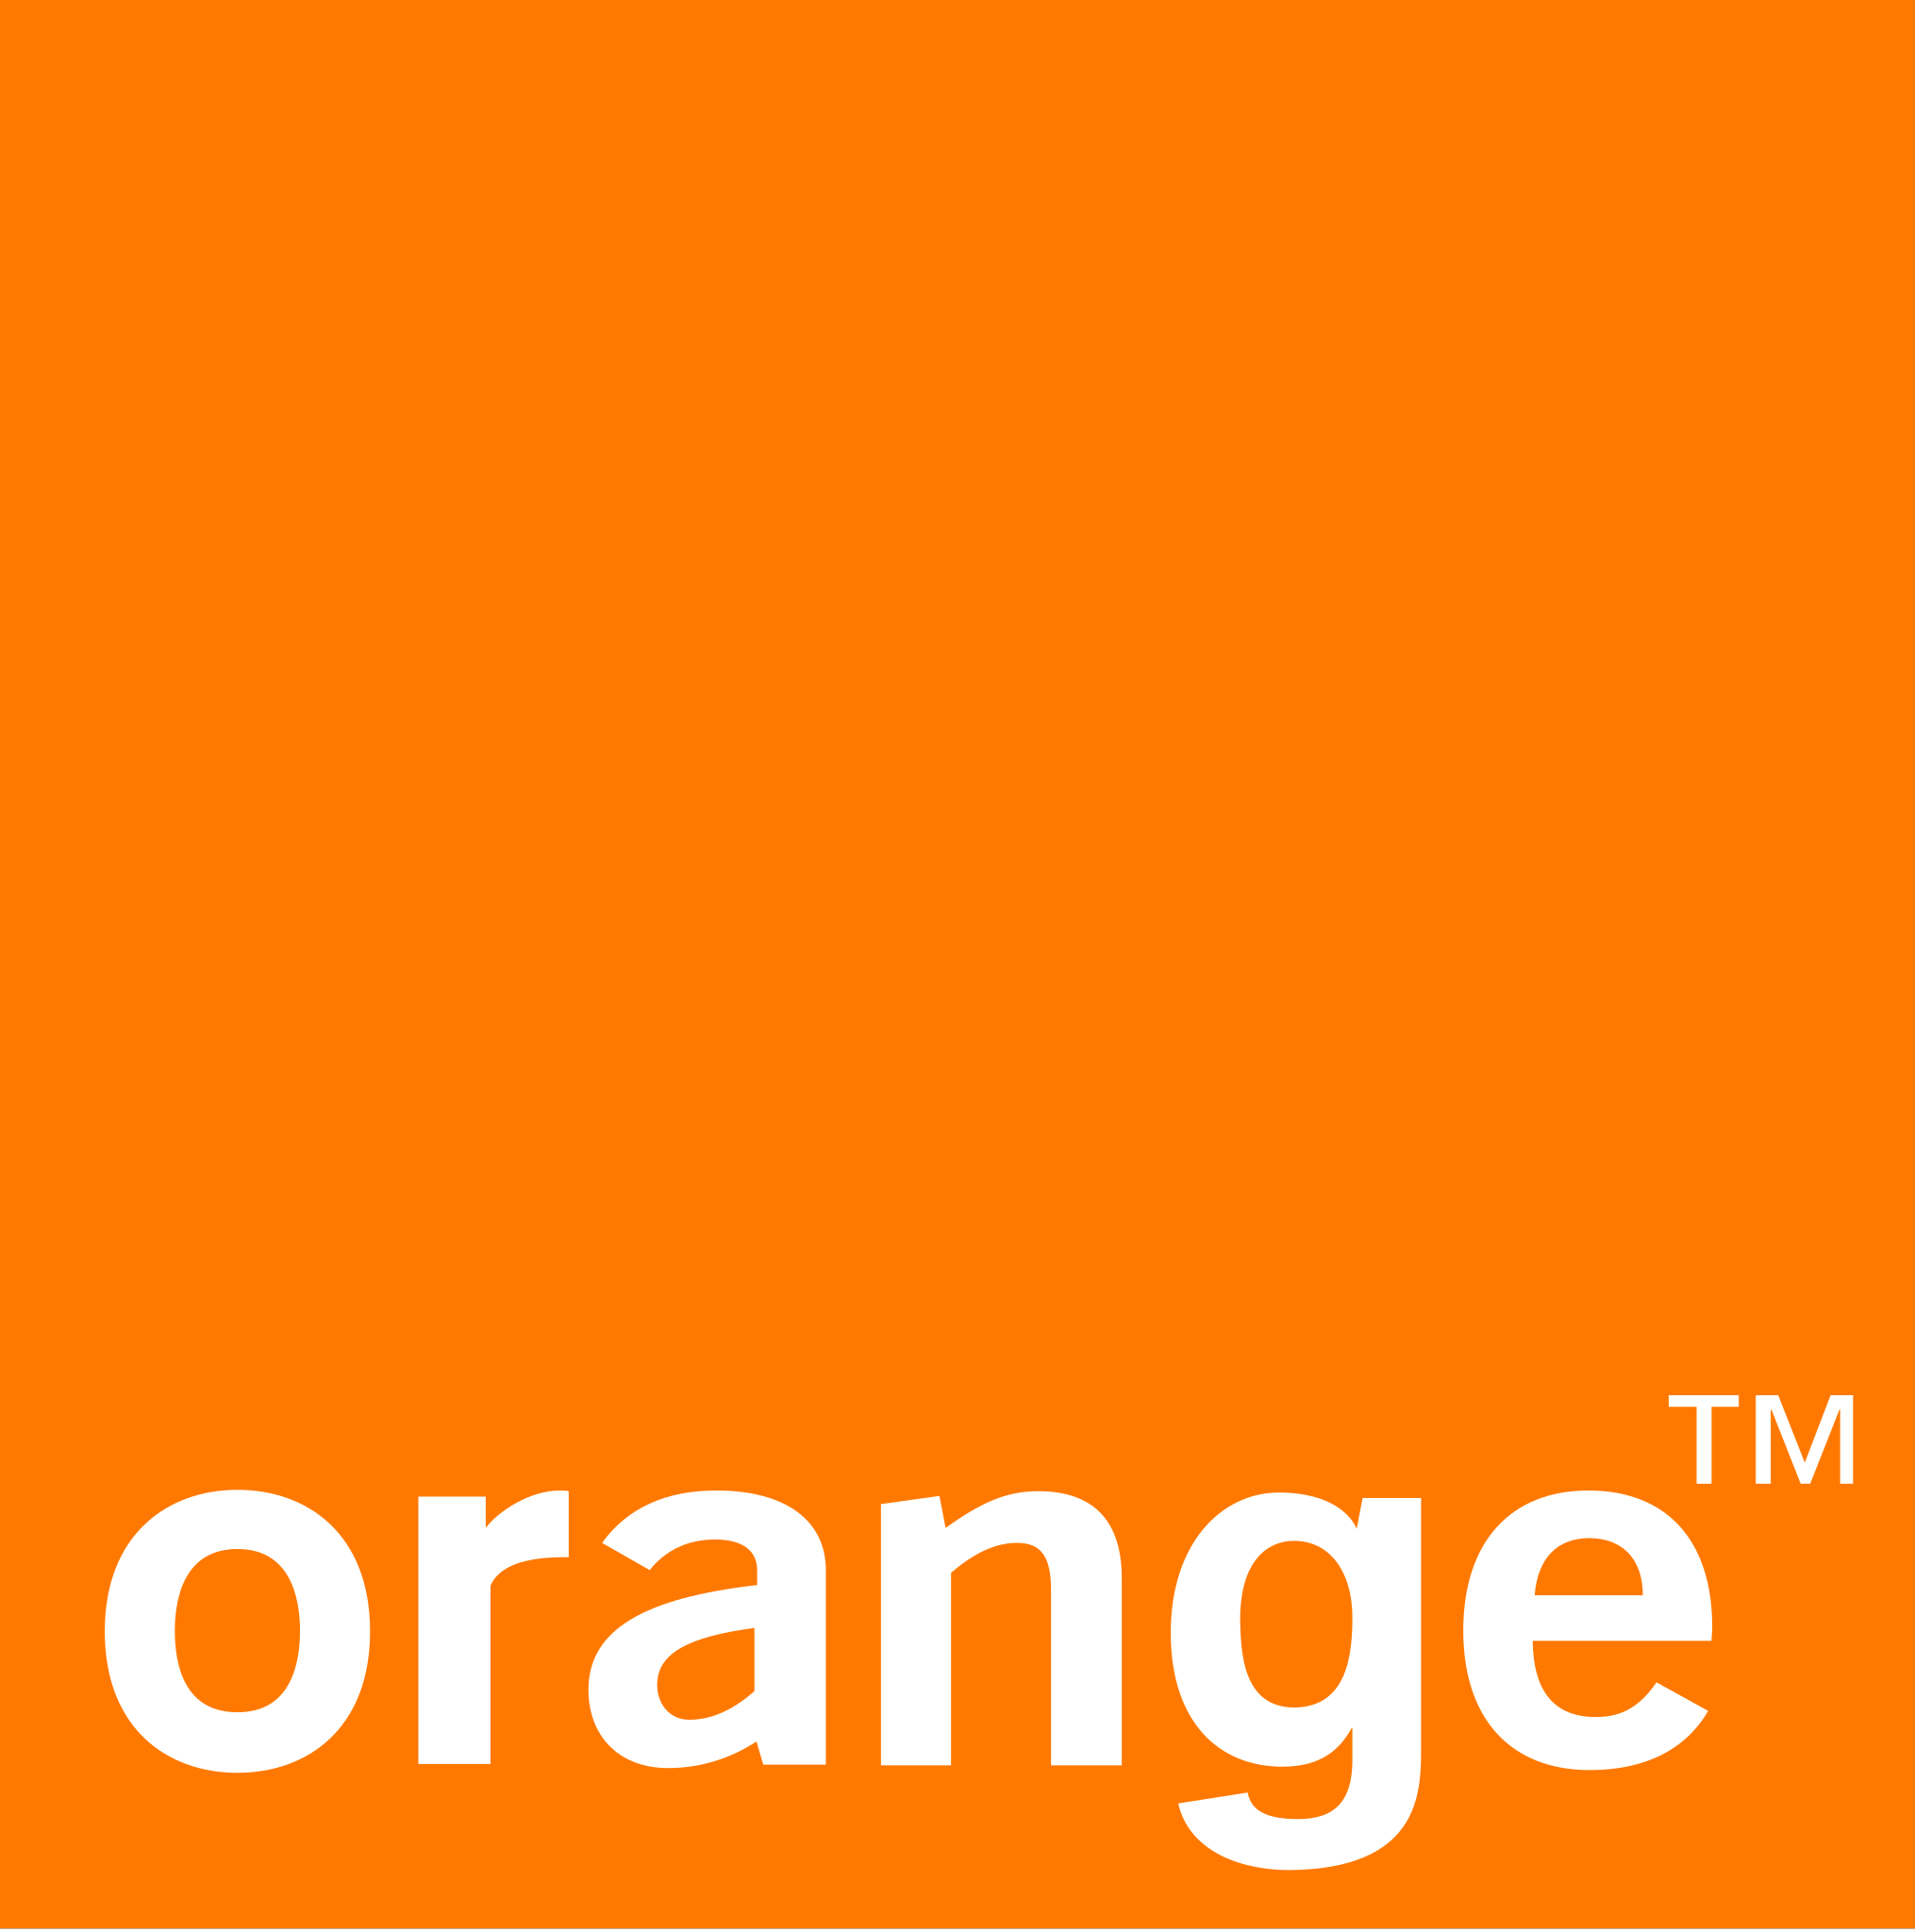 Orange_logo.svg.png